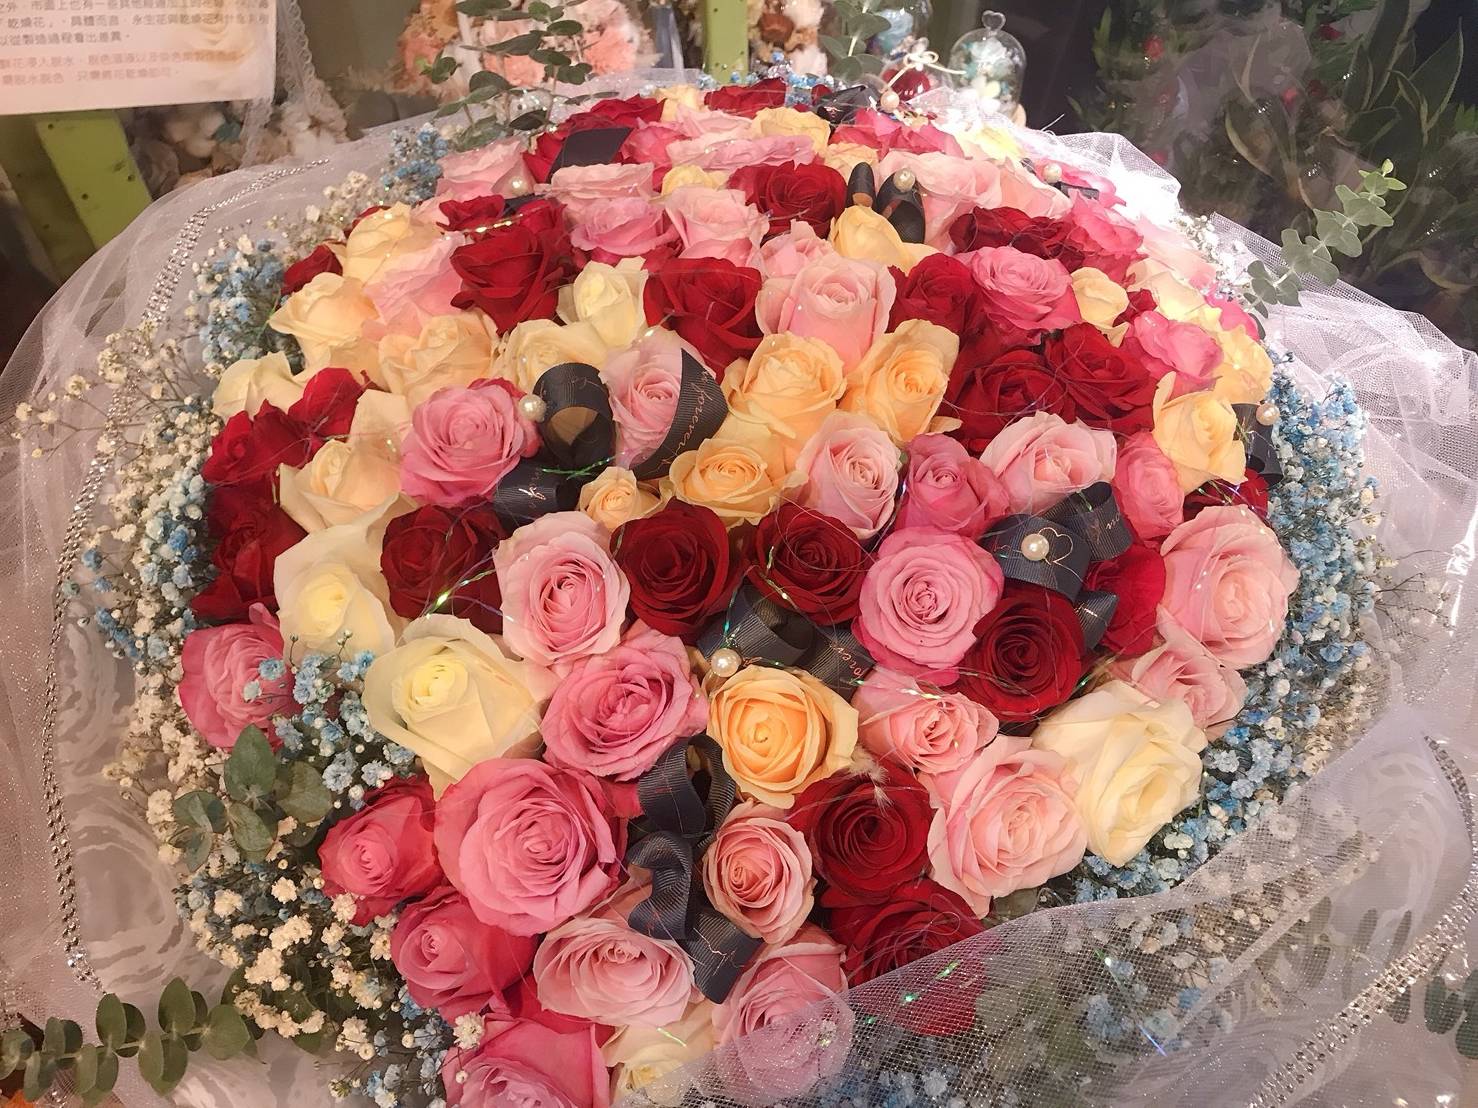 99朵玫瑰花束-美蓮網路花店，提供花束代送花等相關服務。